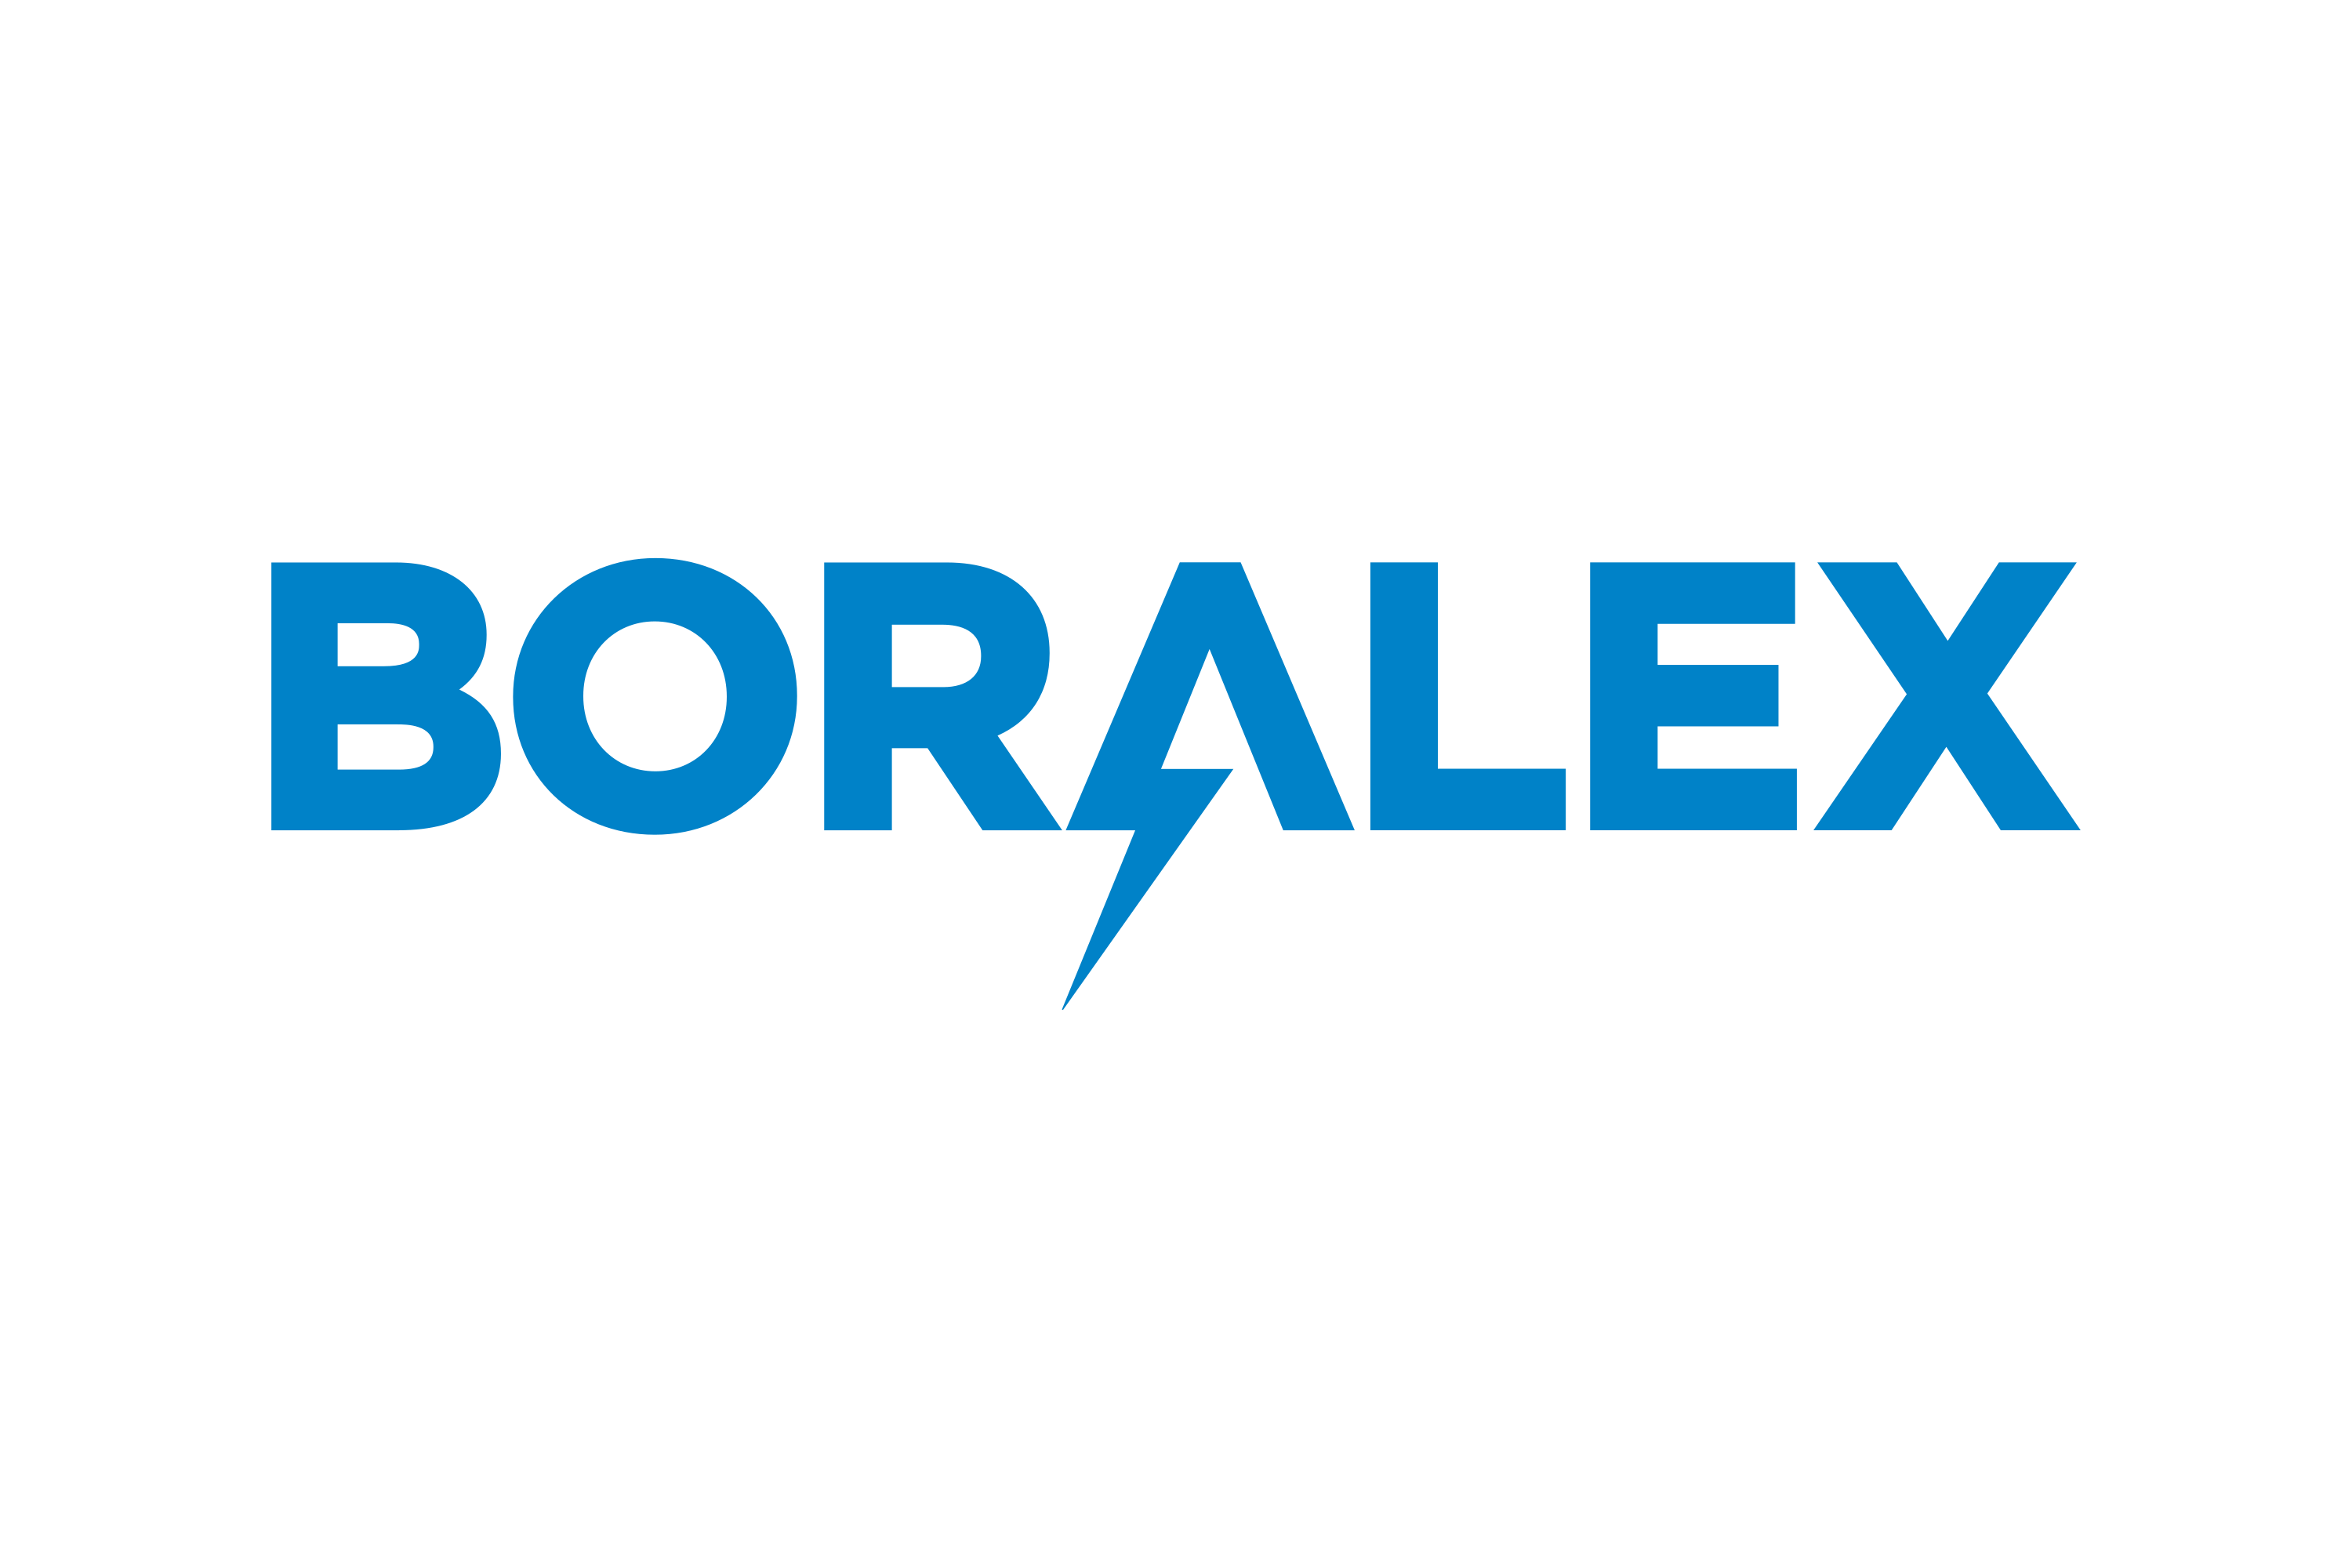 Download Boralex Logo in SVG Vector or PNG File Format - Logo.wine